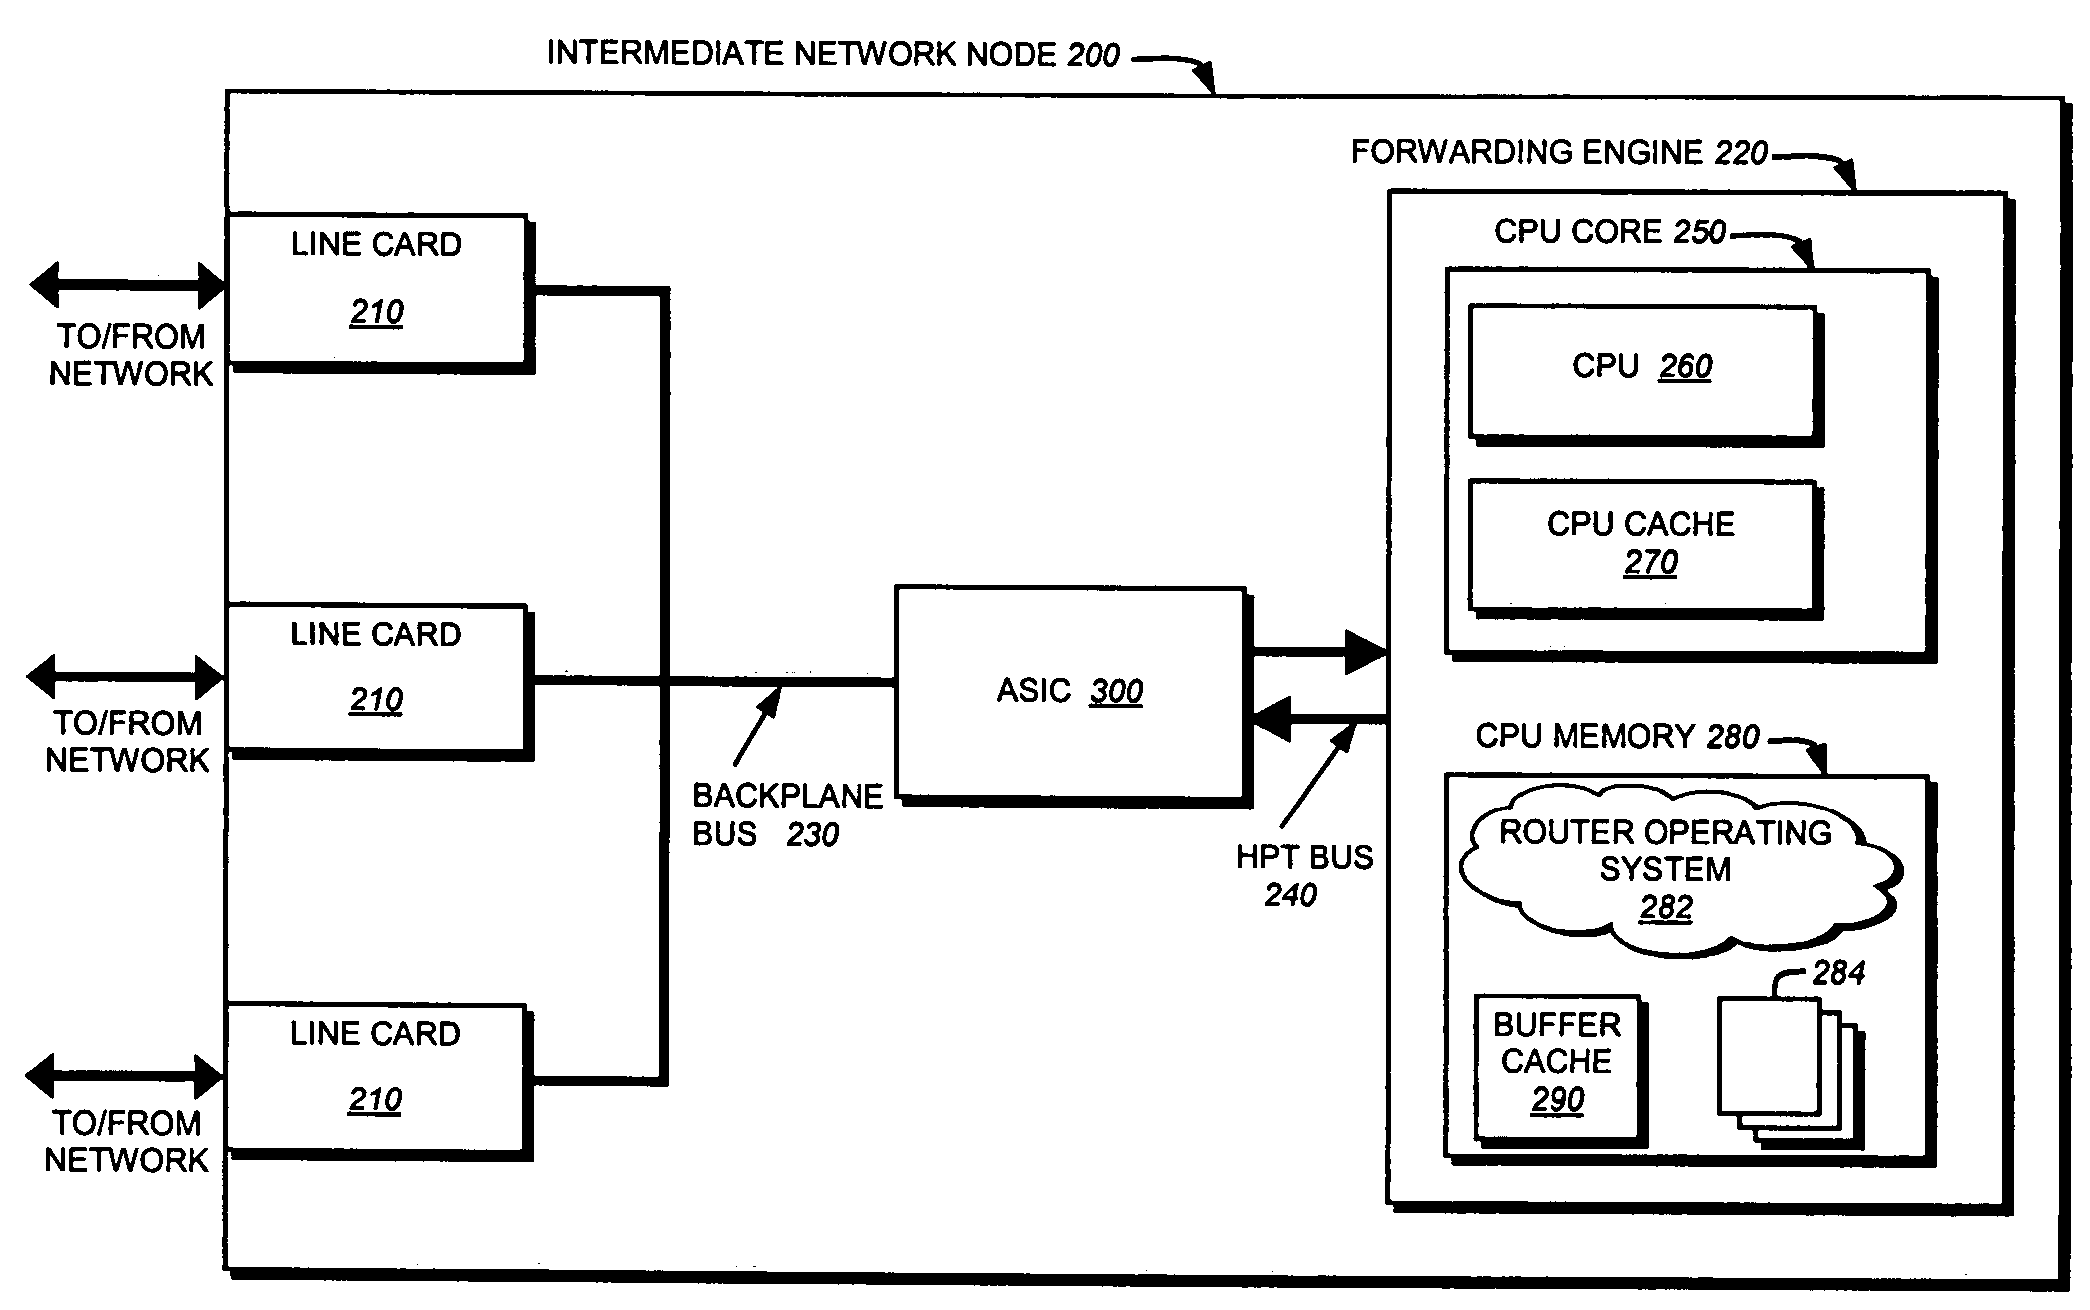 Hypertransport data path protocol